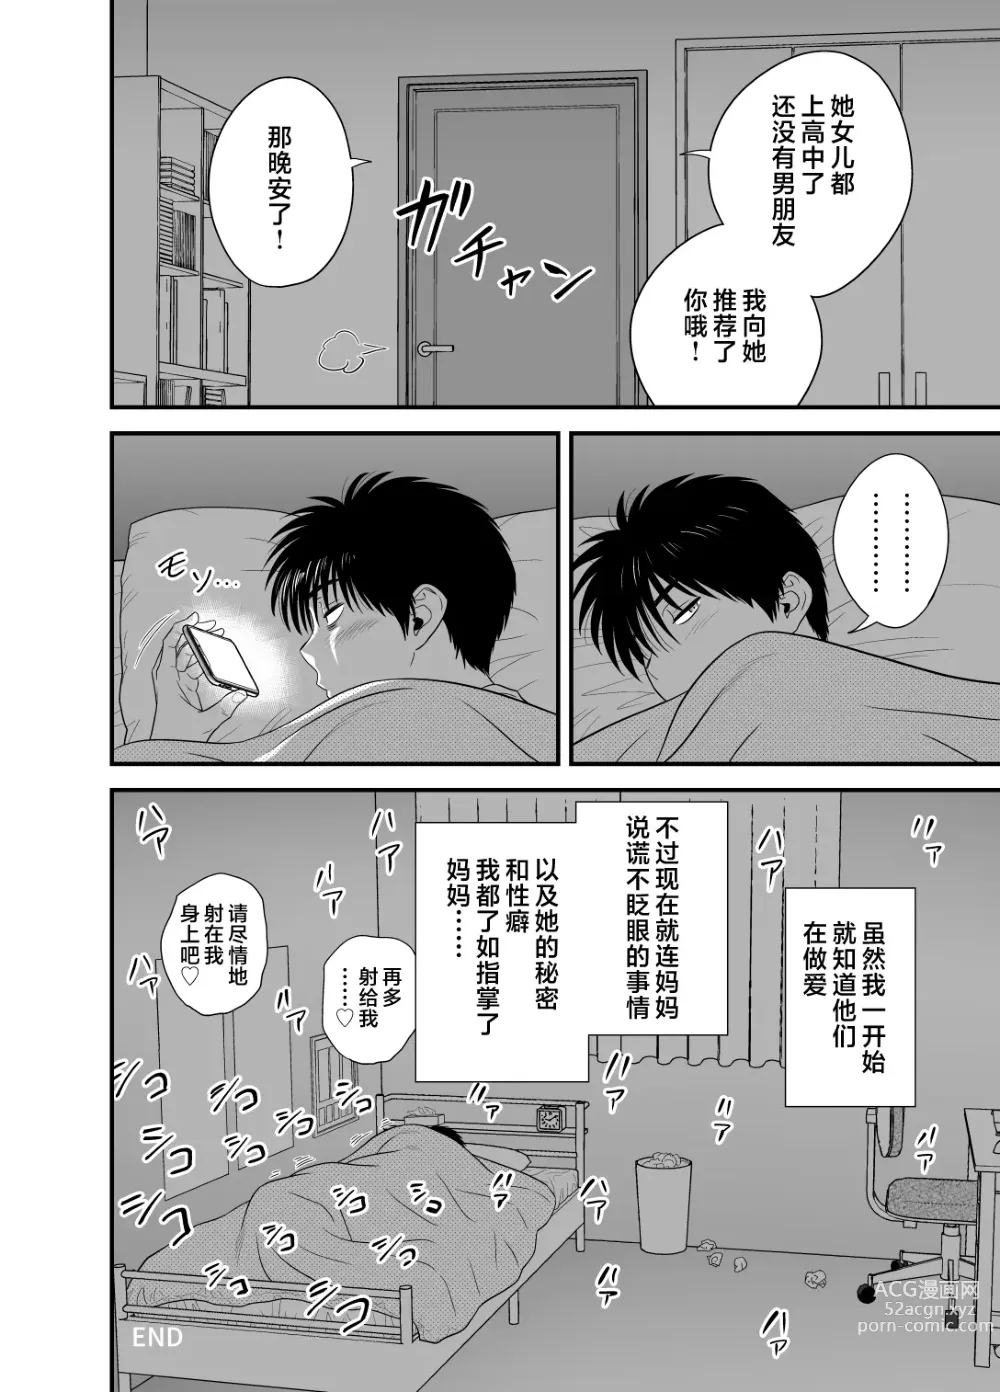 Page 58 of doujinshi Haha ga Tomo Kano ni Natta node 3